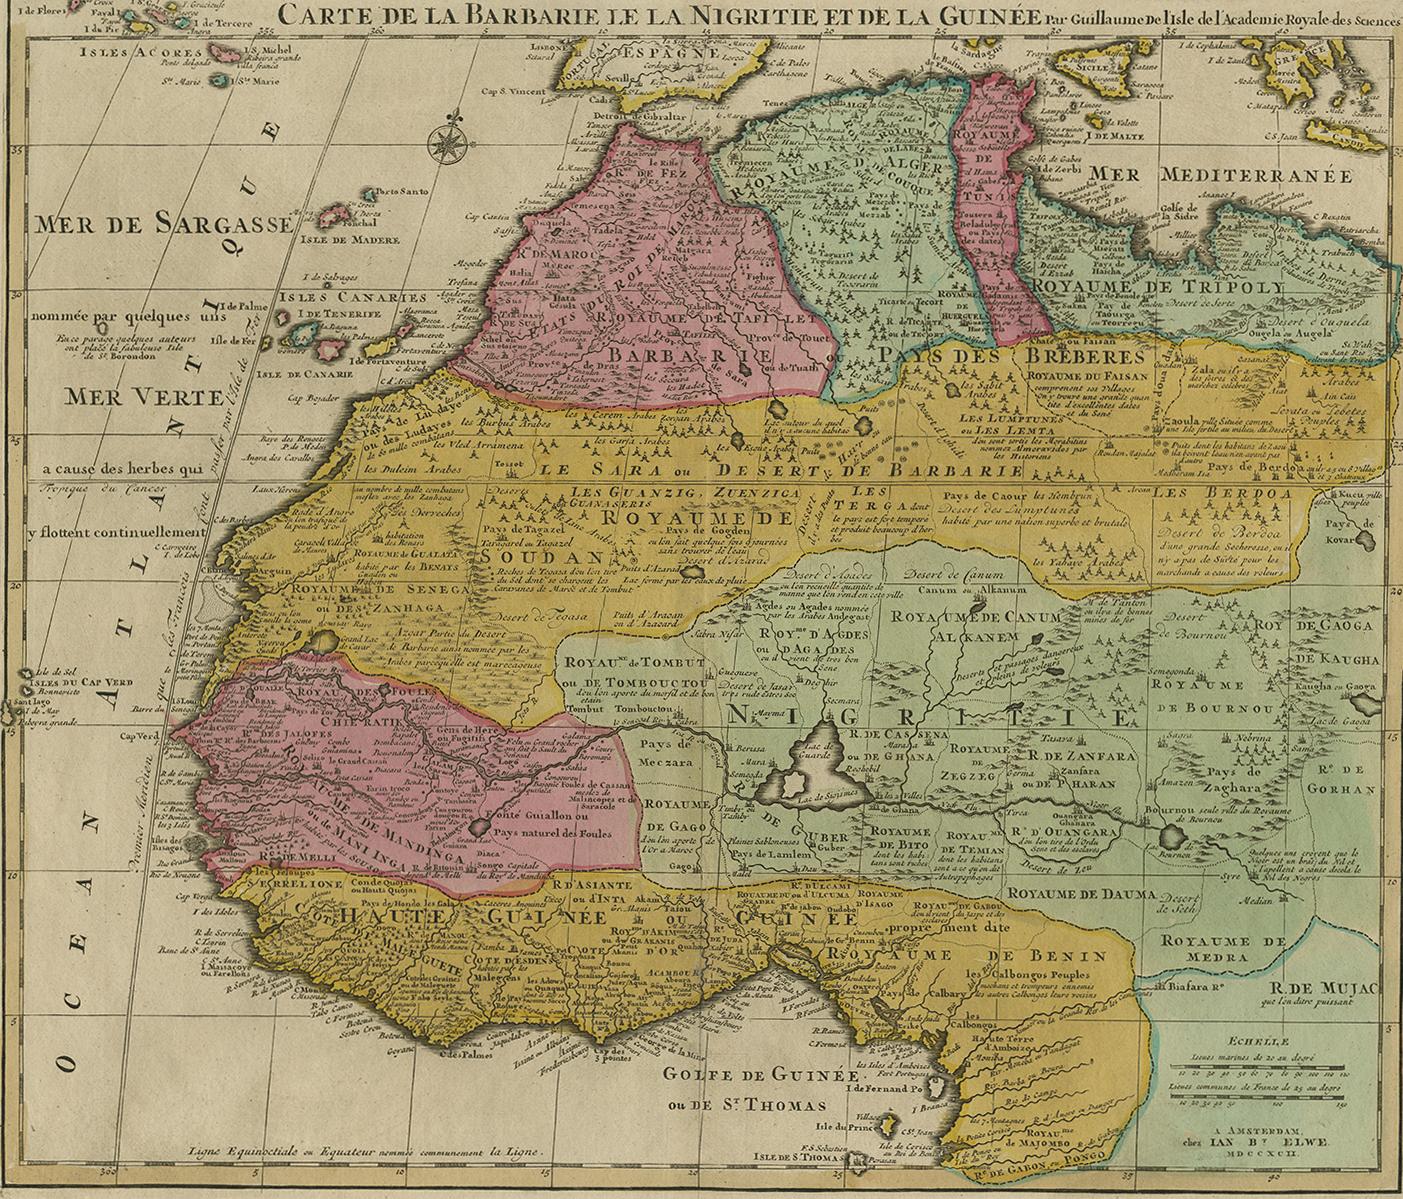 Schöne, reich gestochene Karte von Nord- und Westafrika, basierend auf den früheren Karten von De L'Isle. Durchgehend reichhaltig kommentiert und mit ausgezeichneten regionalen Details. Zu viele Details, um sie zu beschreiben. Die Qualität des